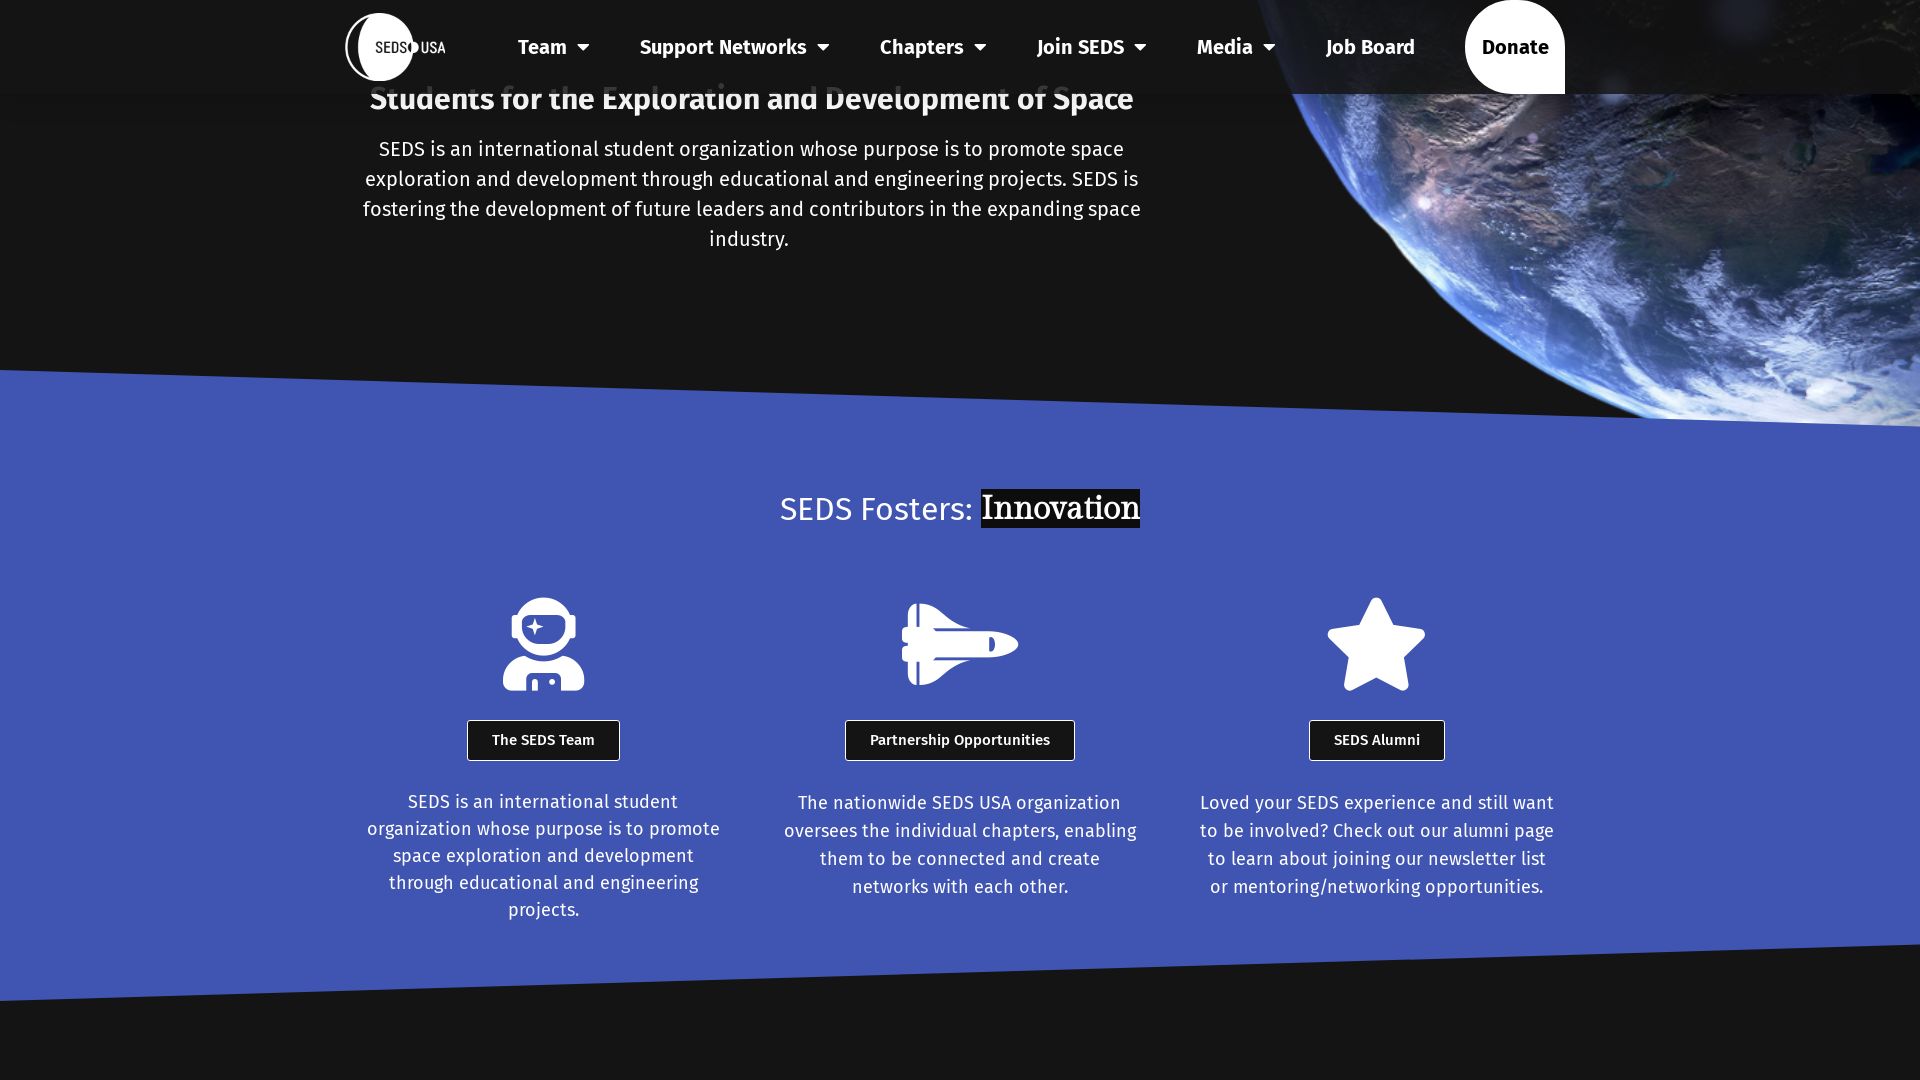 Website status seds.org is   ONLINE